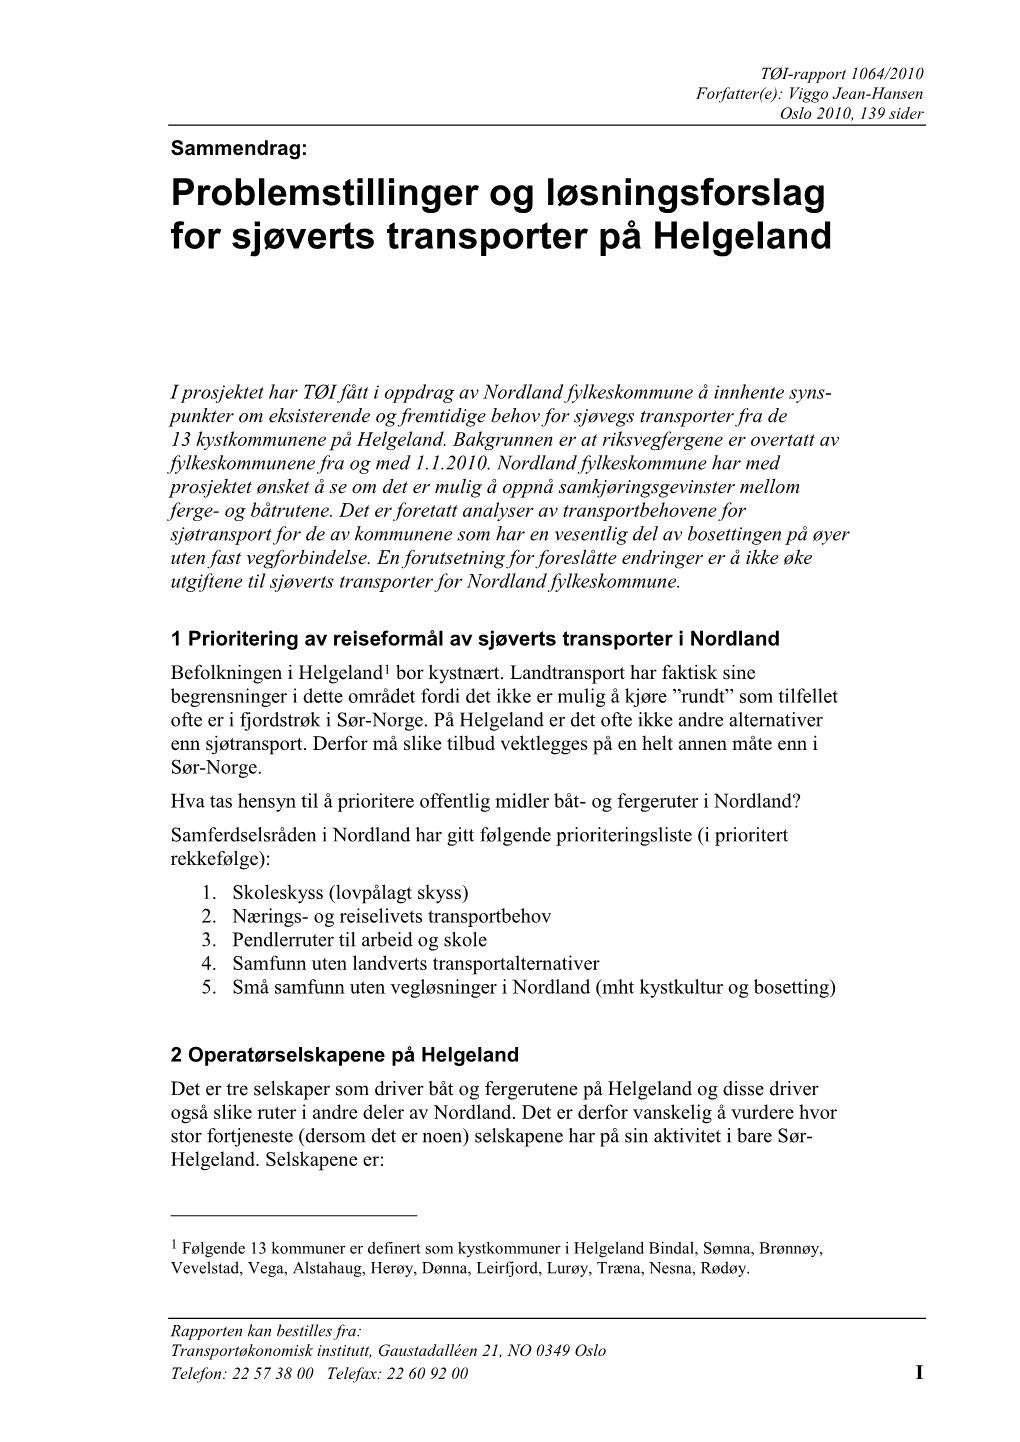 Problemstillinger Og Løsningsforslag for Sjøverts Transporter På Helgeland